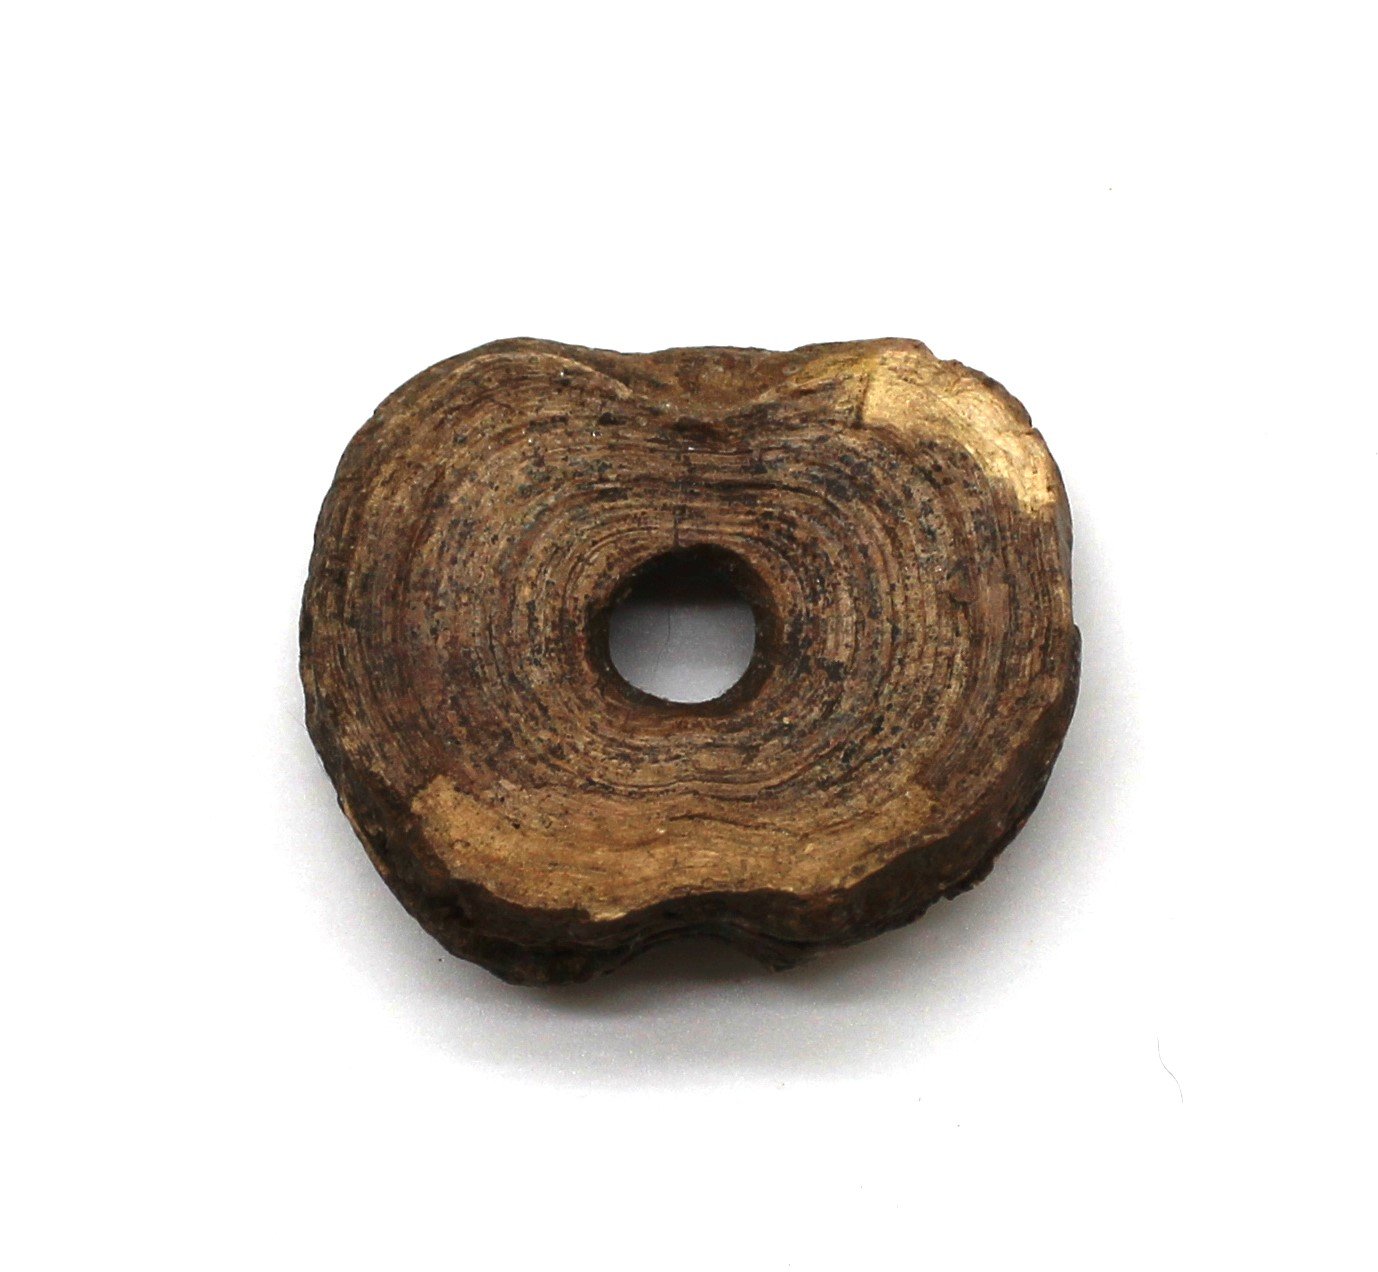 Прясло кістяне, ХІІ ст. - перша половина XIV ст. (Національний заповідник "Хортиця" CC BY-NC-SA)